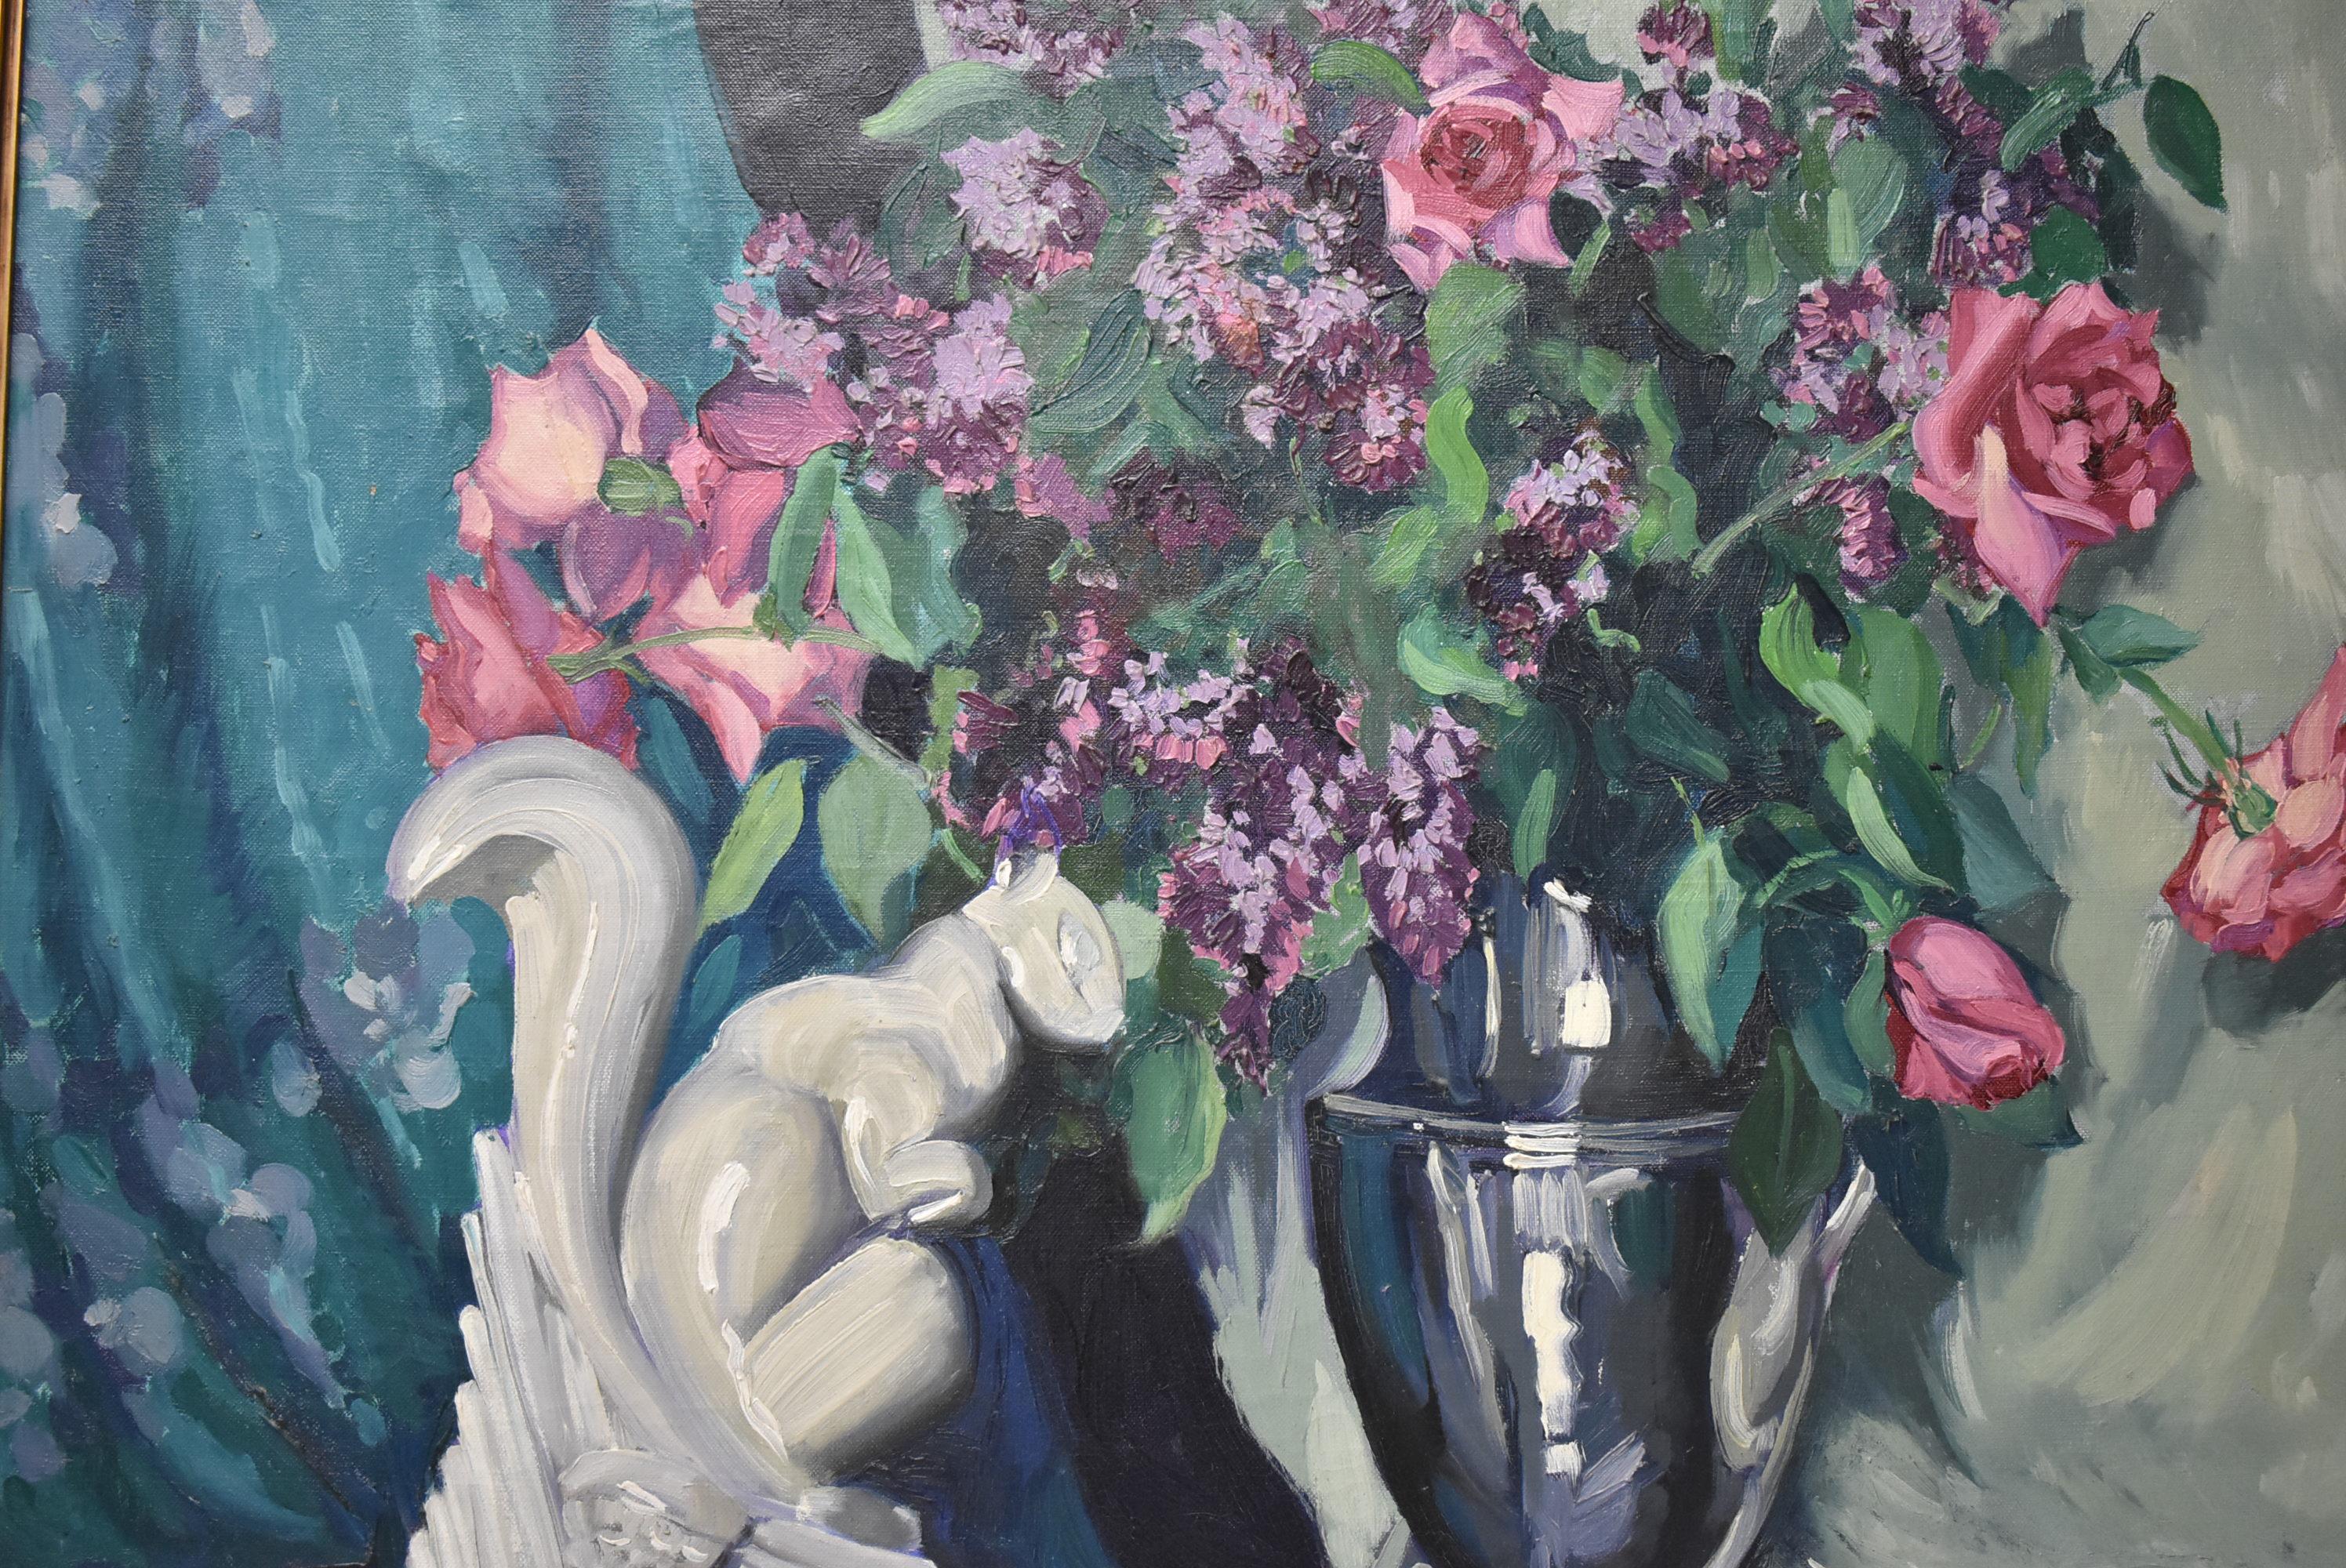 Peinture à l'huile sur toile de l'artiste américaine Leonore Smith Jerrems avec cadre Necomb Macklin. Jolie composition florale dans des tons profonds de bleus, verts, roses et violets, complétée par une figure d'écureuil fantaisiste. Des détails